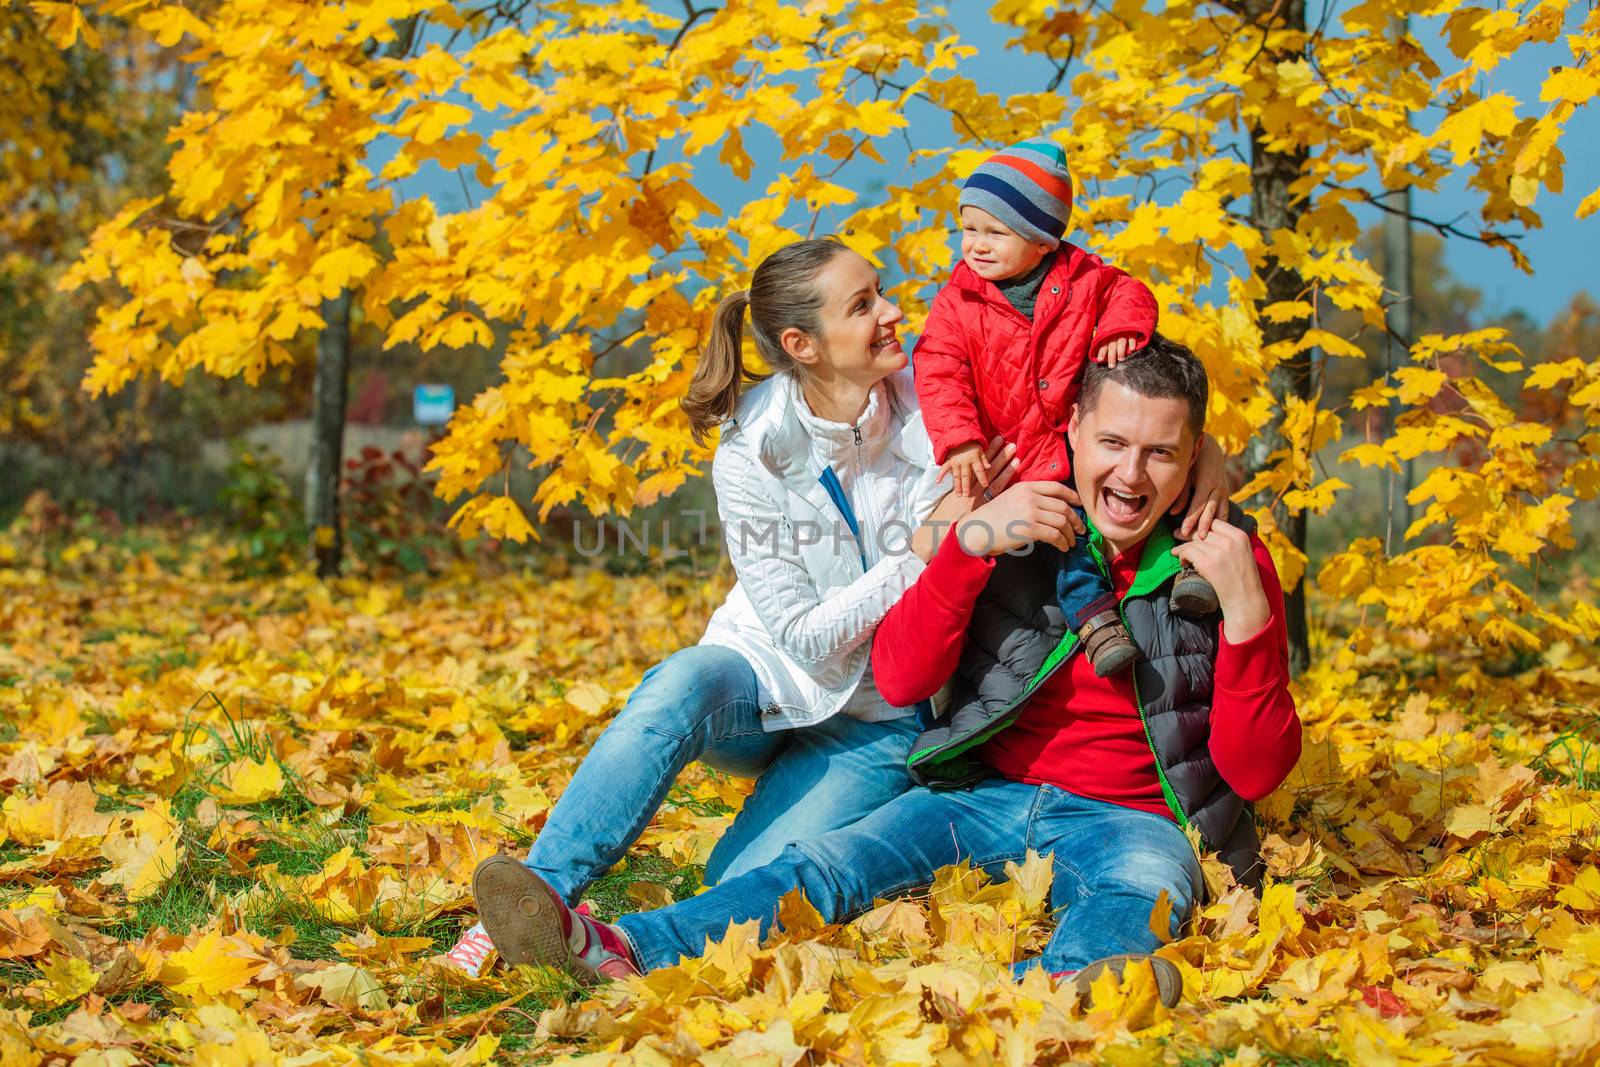 Family at autumn park by maxoliki